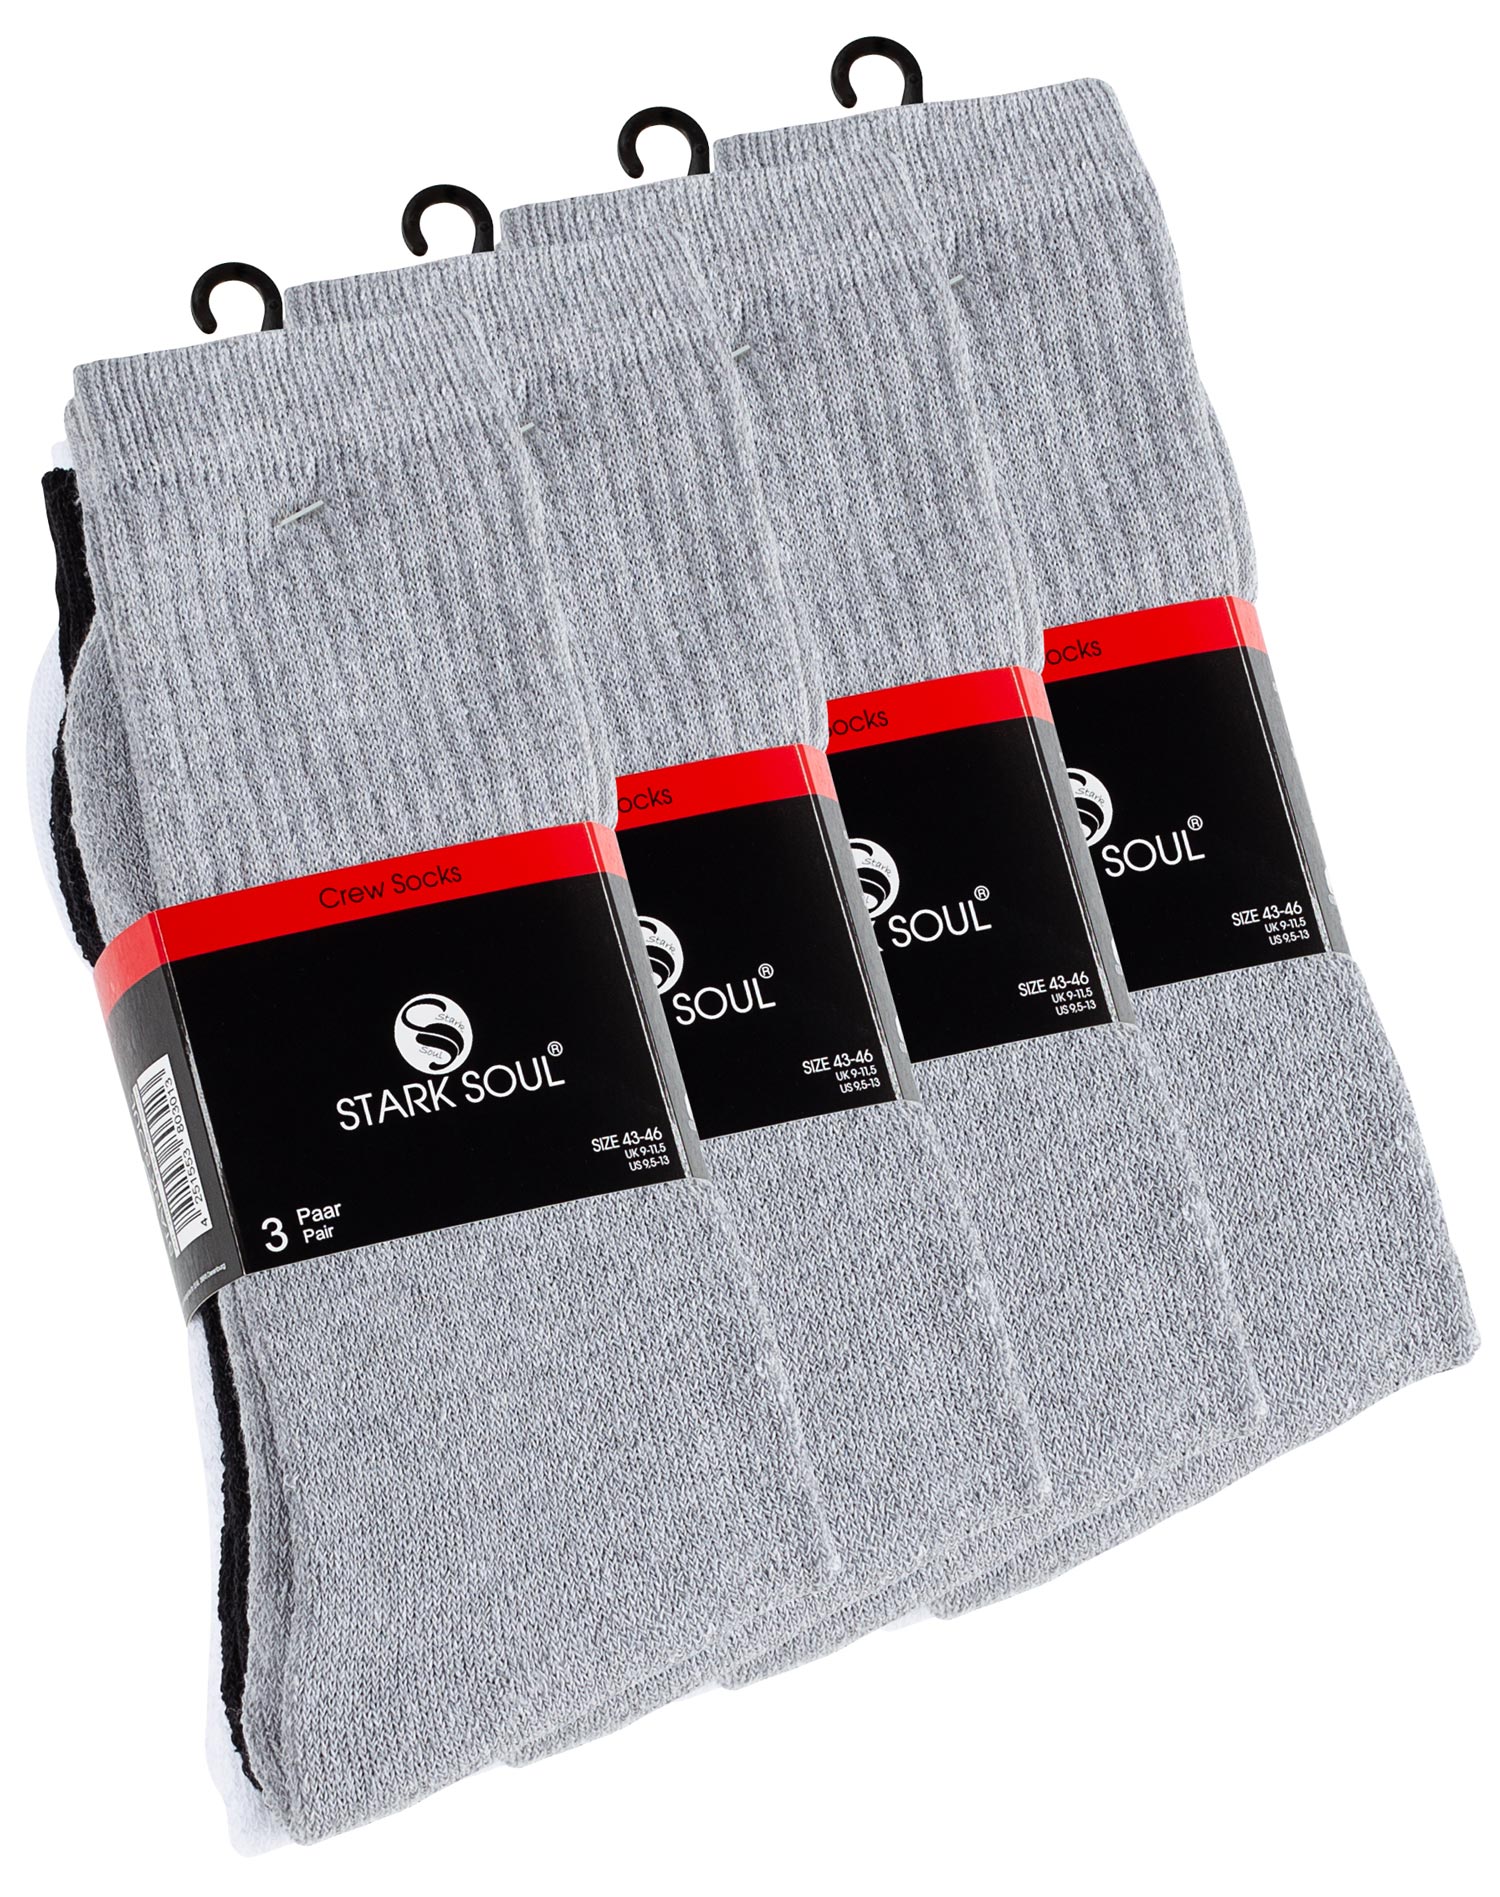 in oder | Sockswear 12 weiss, Crew - schwarz, Tennissocken Paar | Socken grau Damen 6